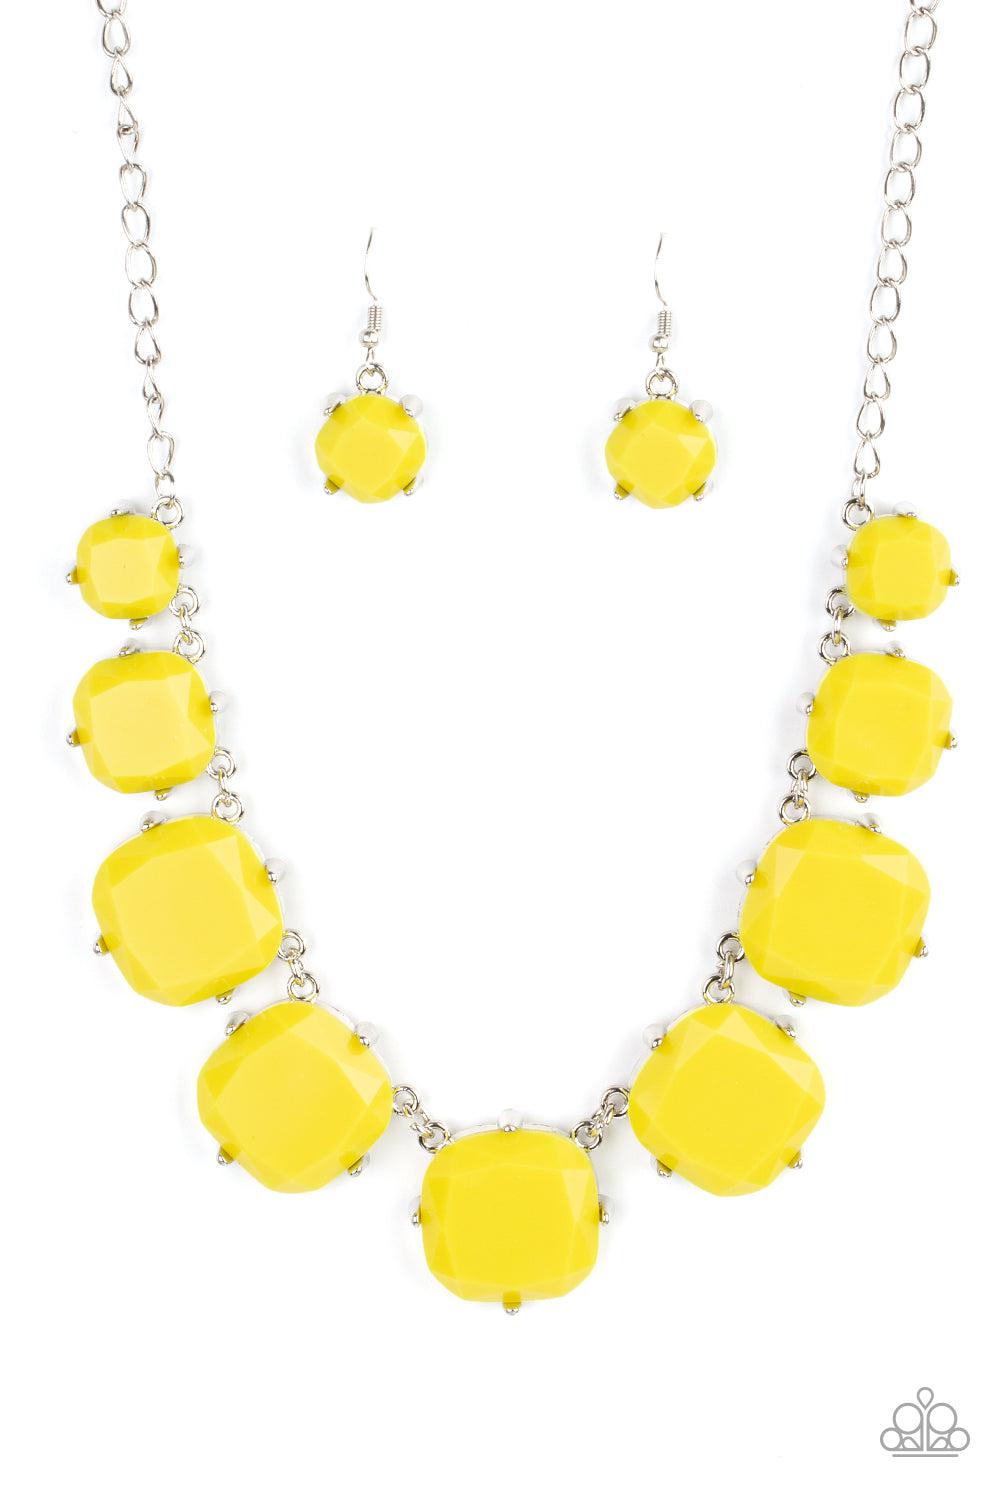 Prismatic Prima Donna Yellow Necklace - Paparazzi Accessories